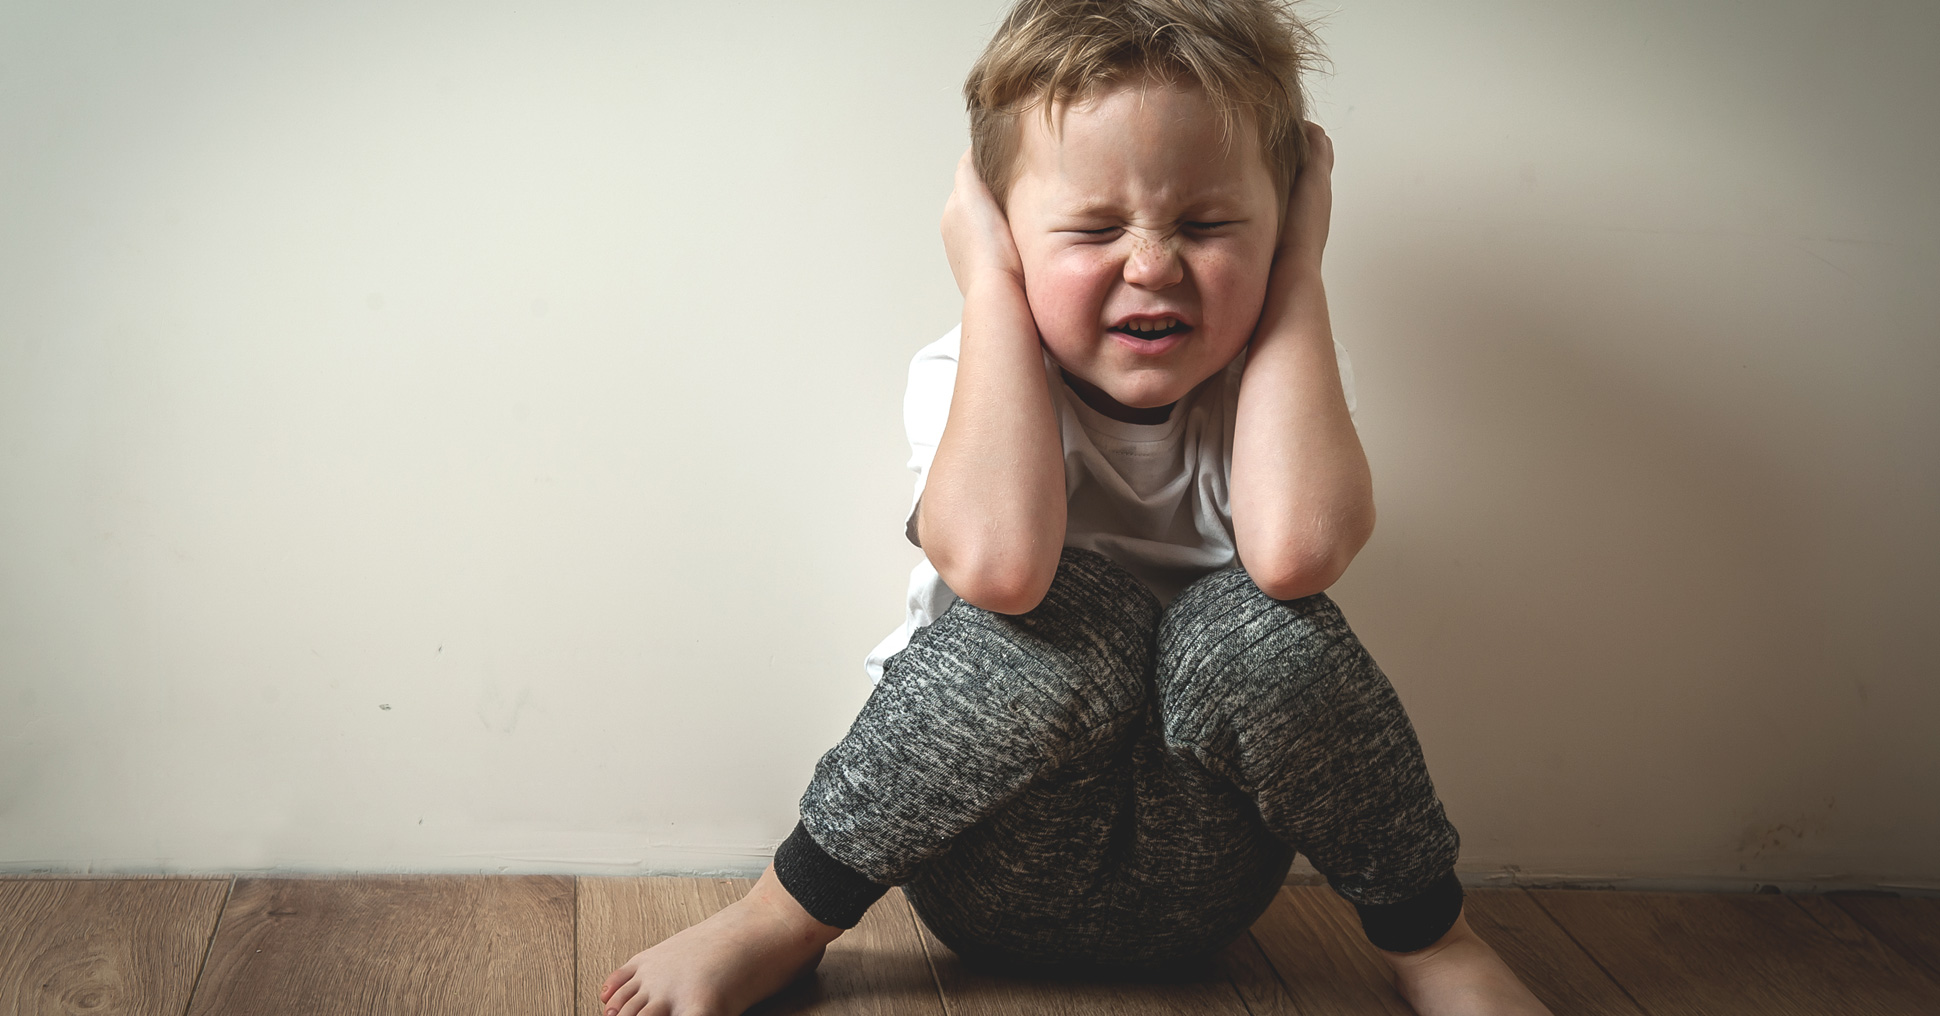 Тревожный ребенок: что делать? Рекомендации психолога